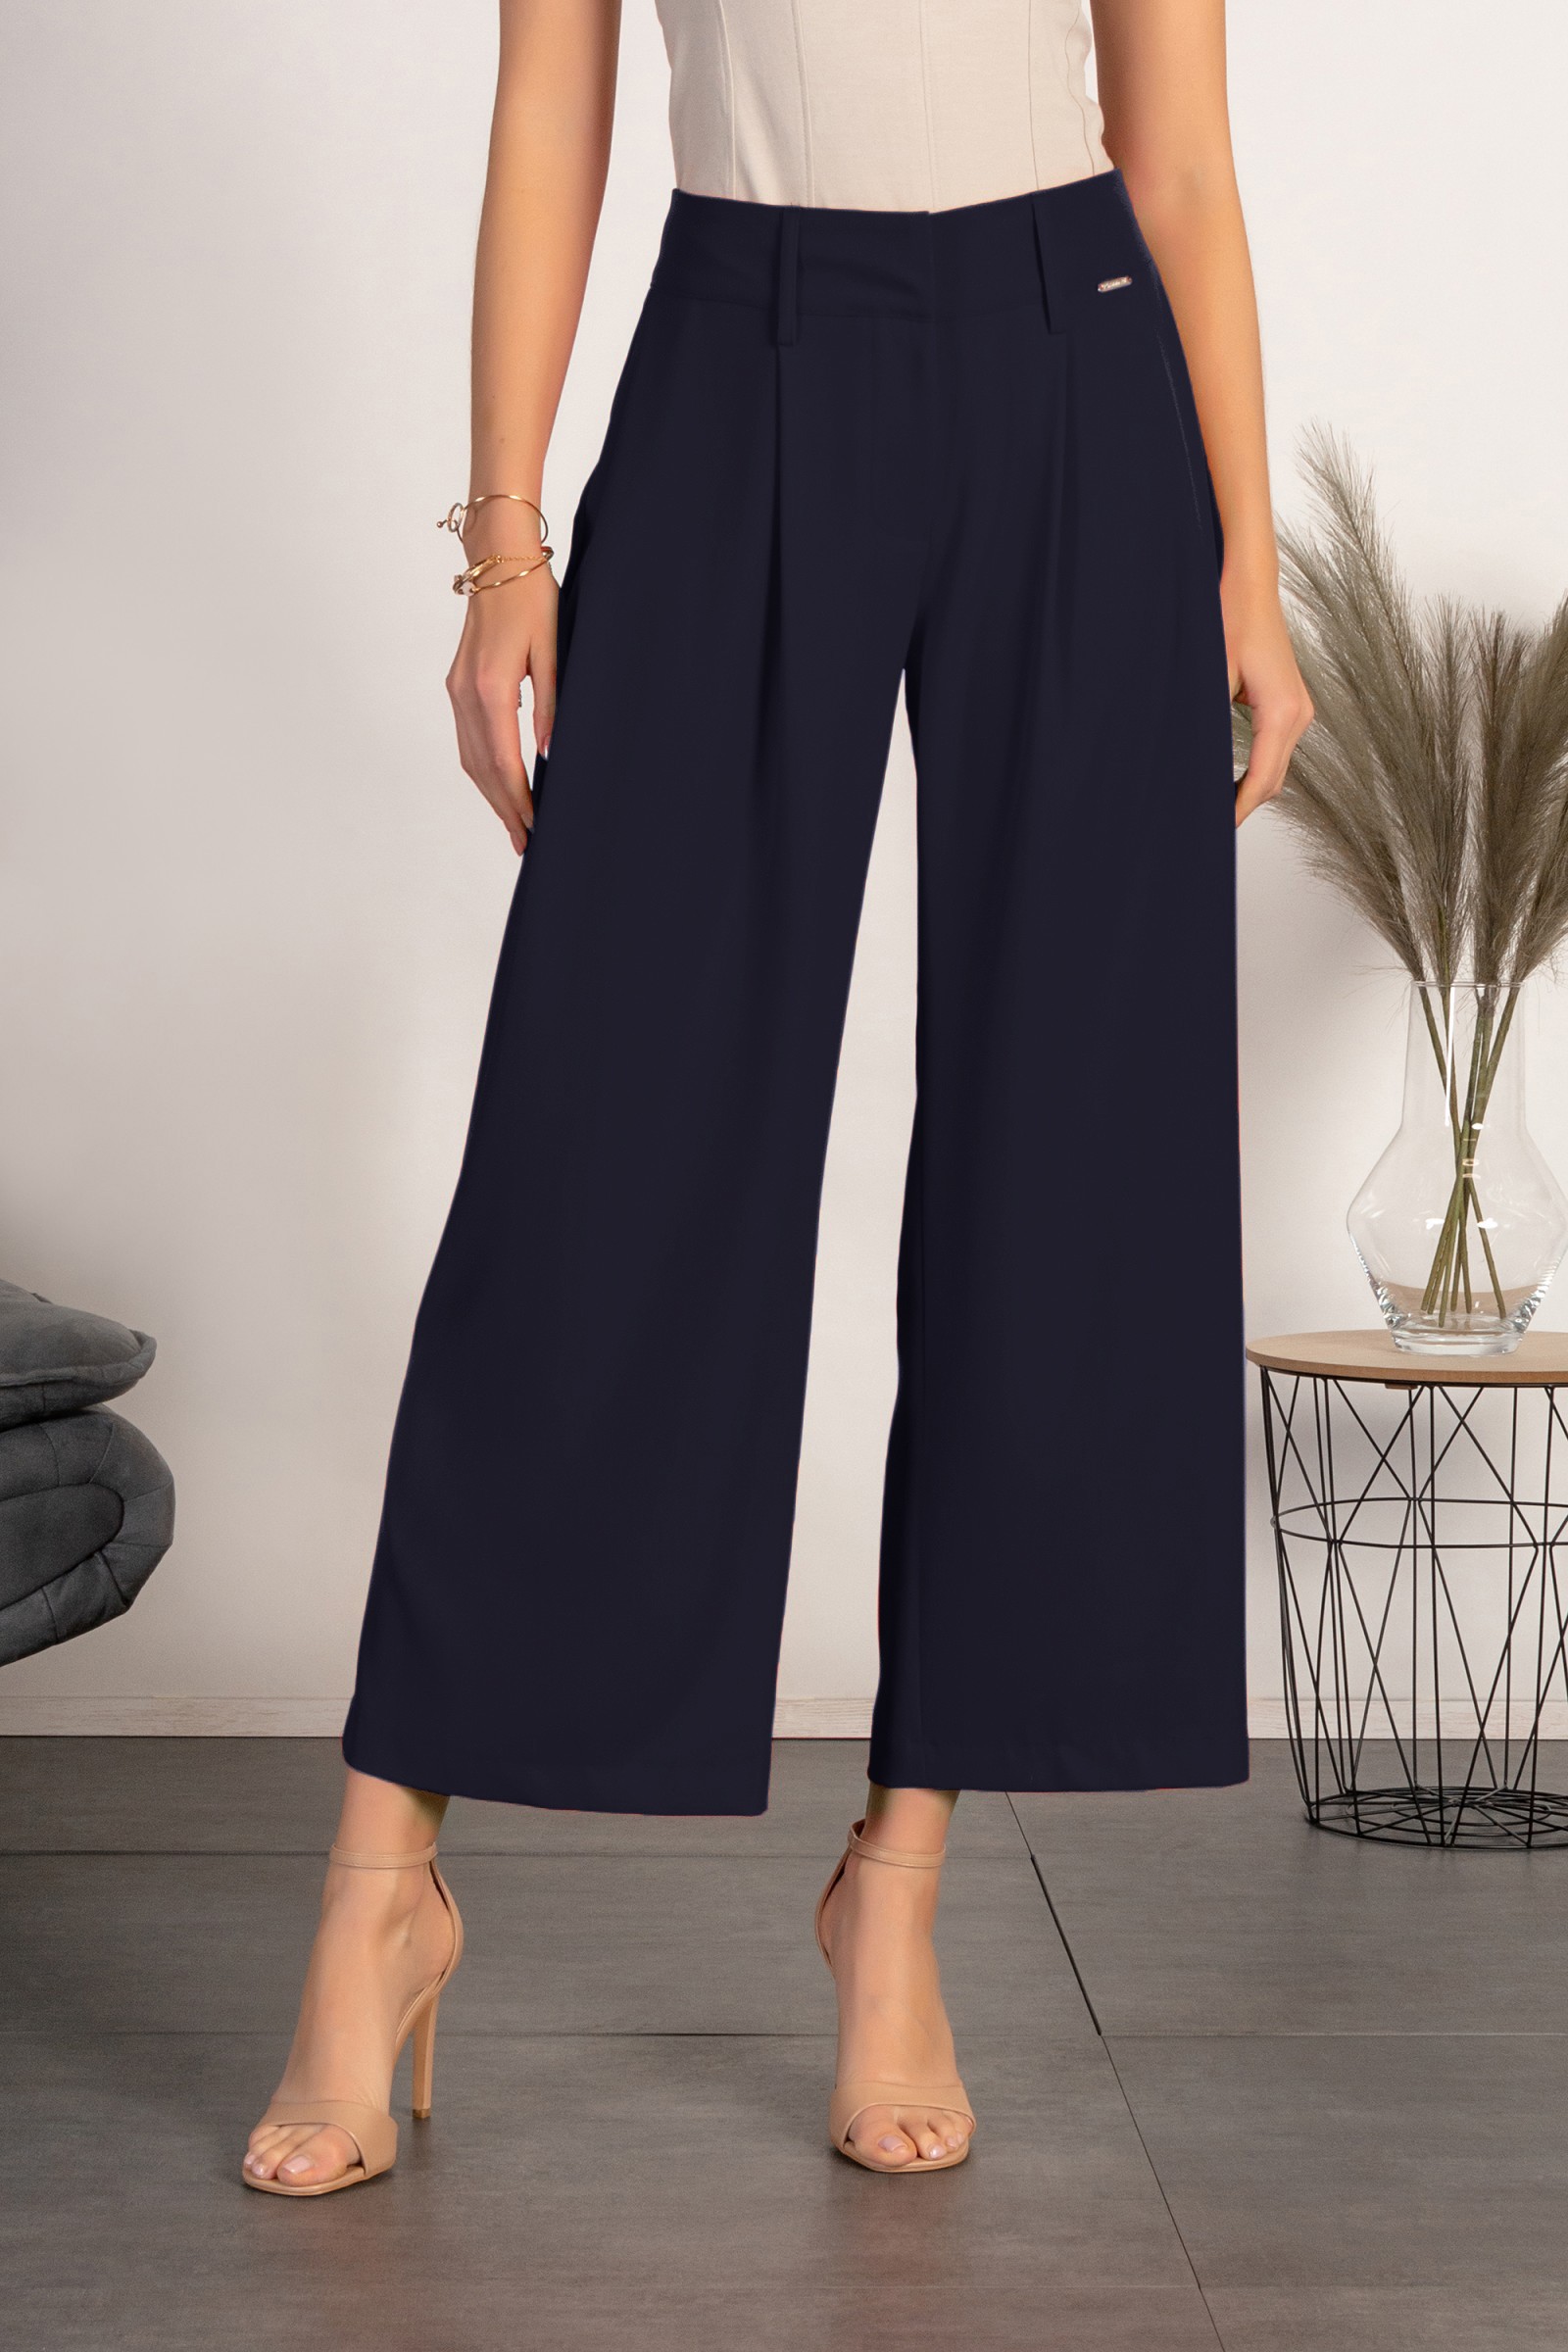 Pantalón elegante con perneras holgadas Roqueta, azul oscuro --68%